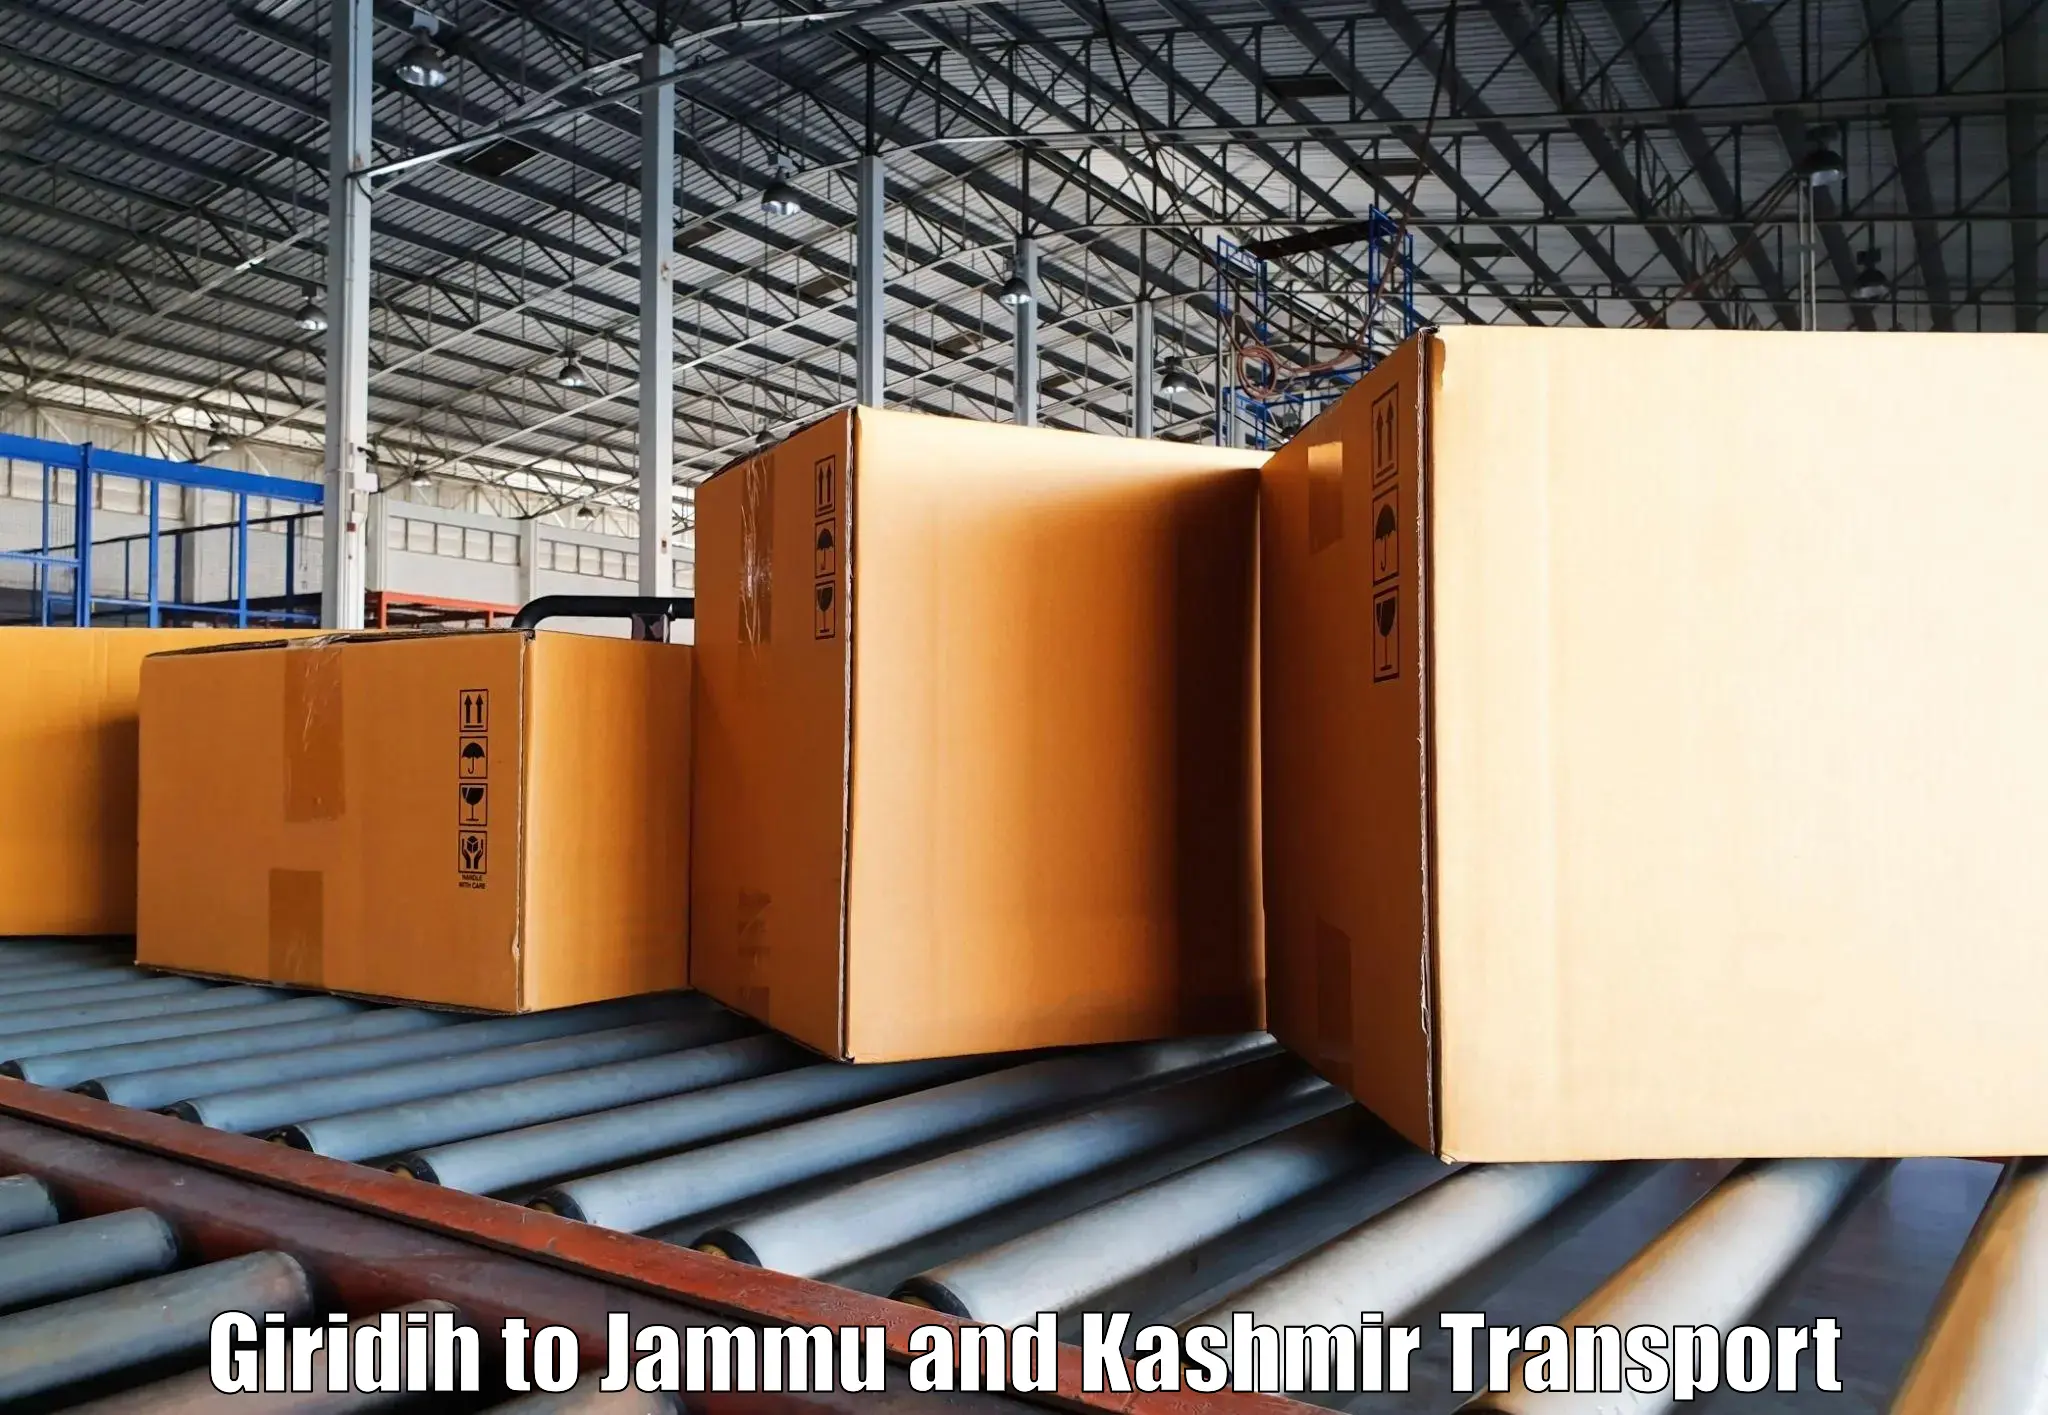 Online transport service Giridih to Jammu and Kashmir